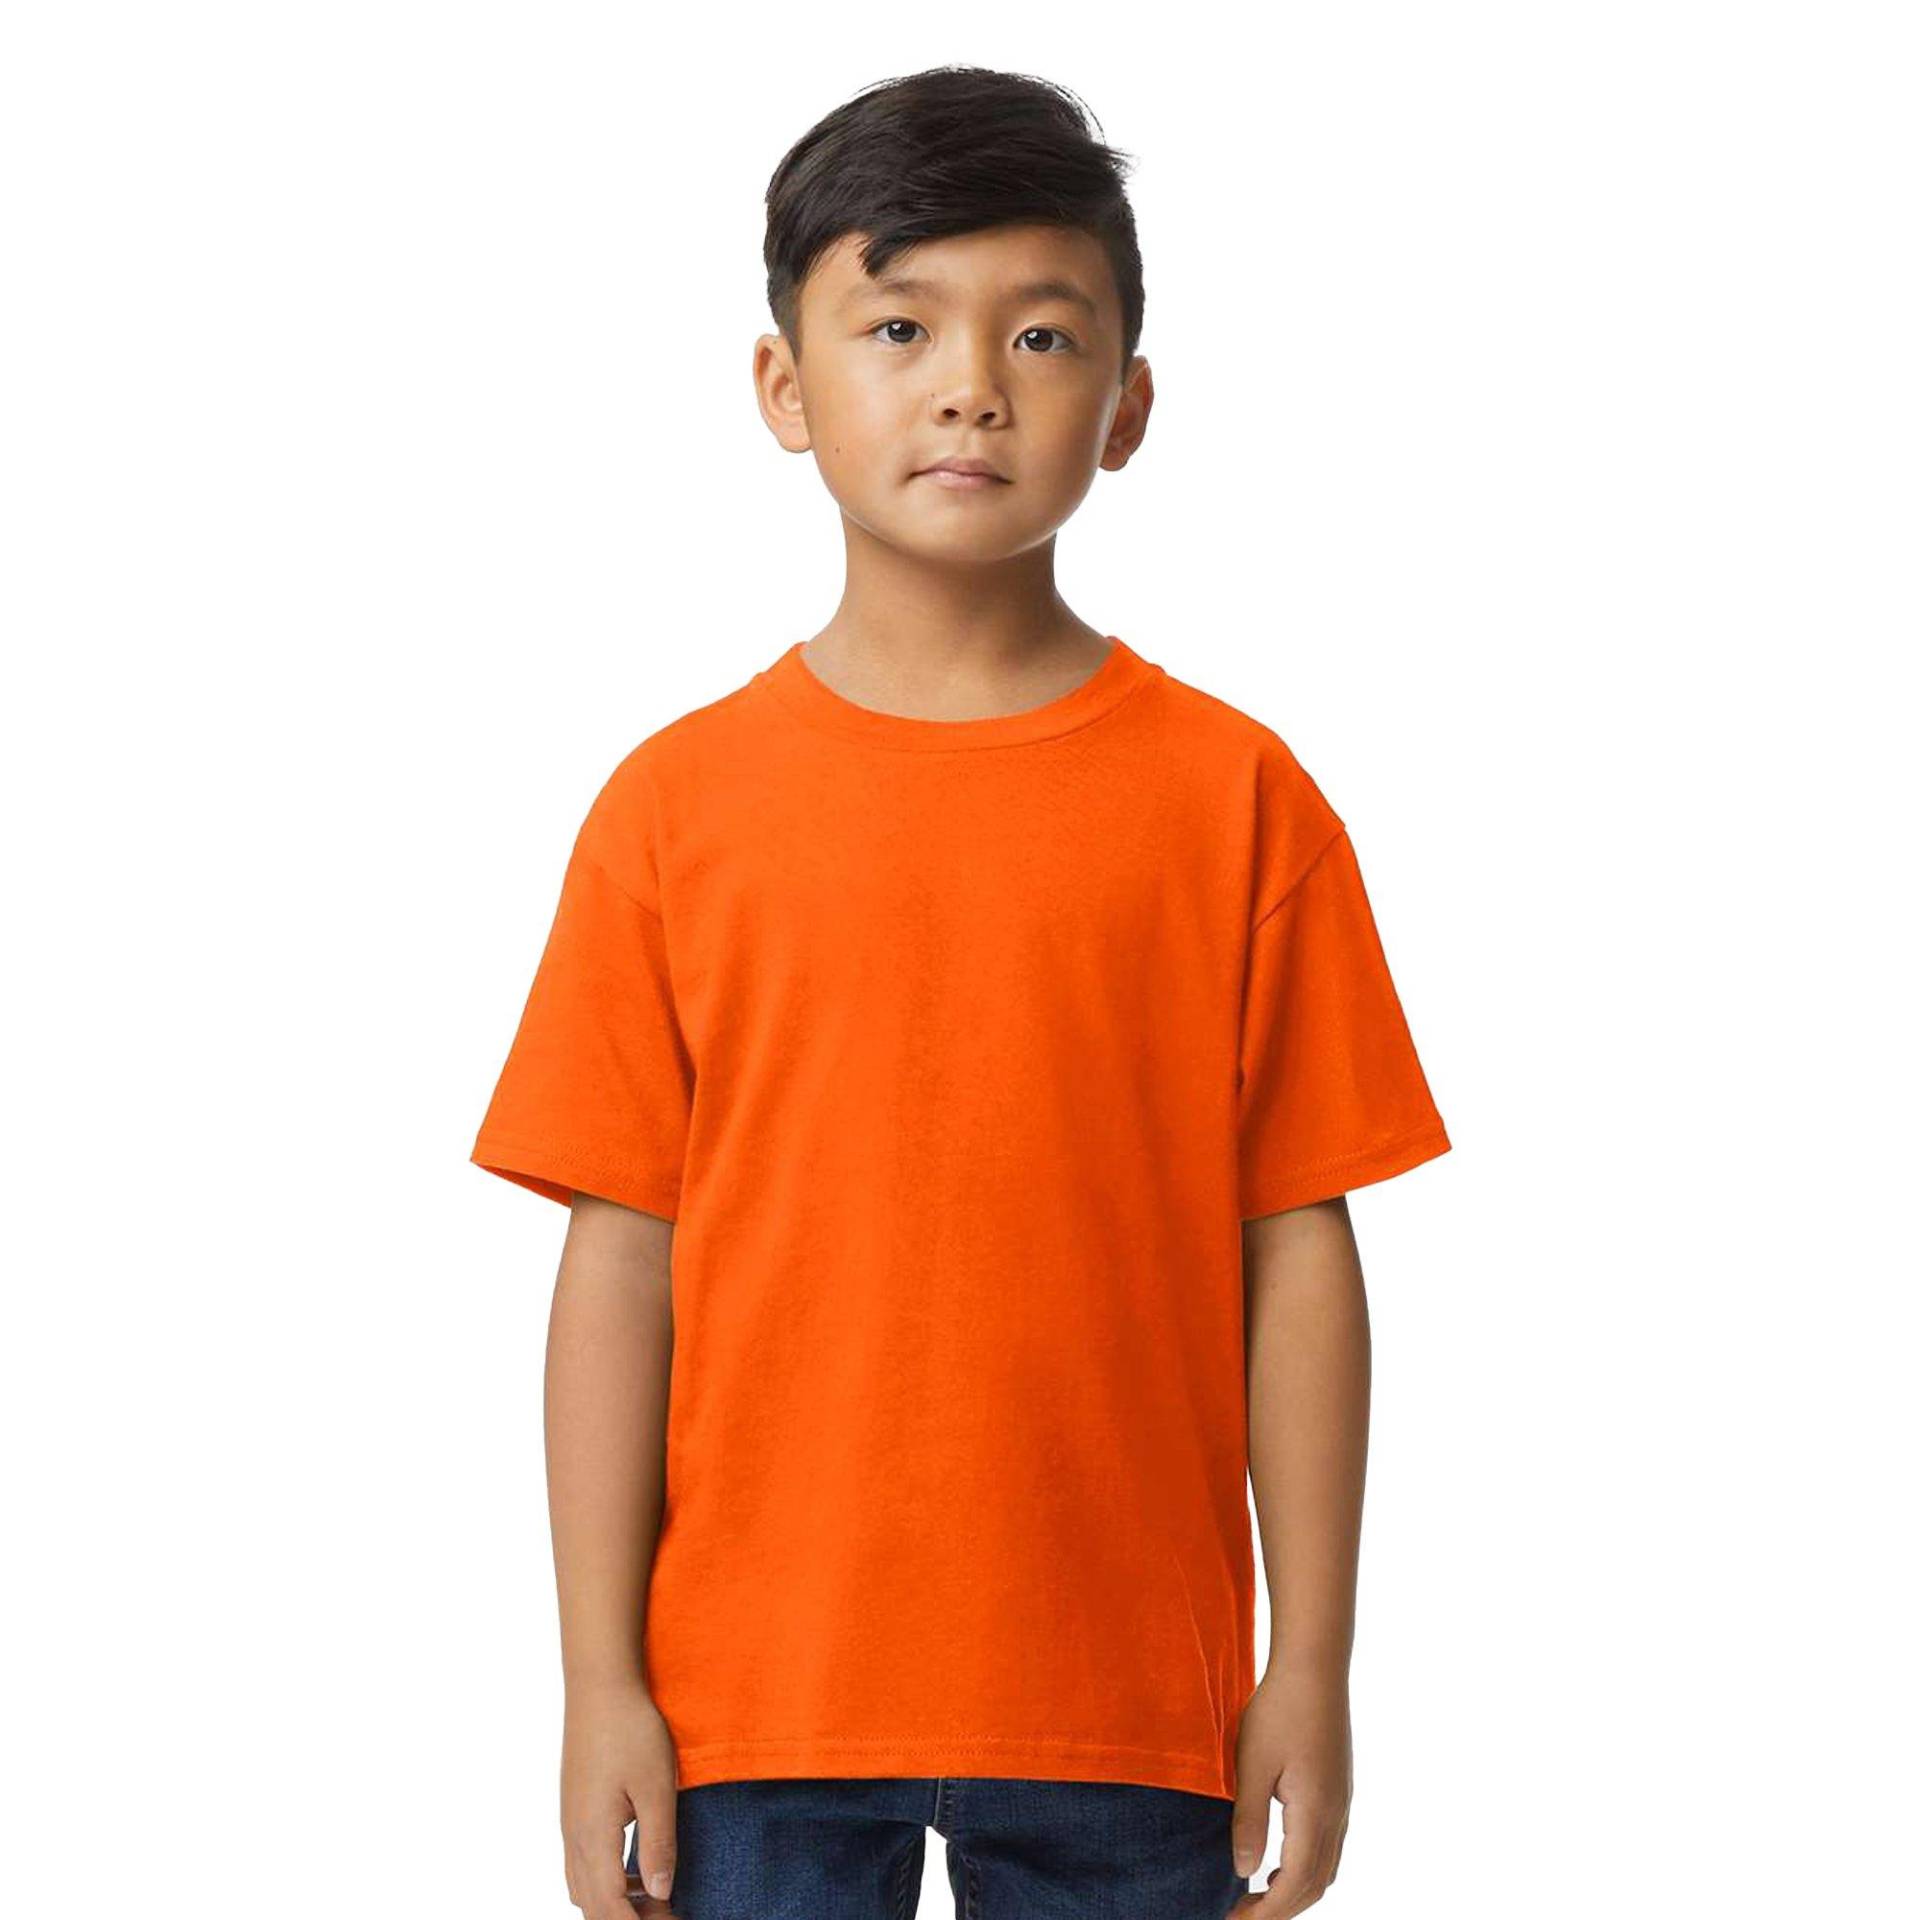 Tshirt Weiche Haptik Mädchen Orange 158/164 von Gildan